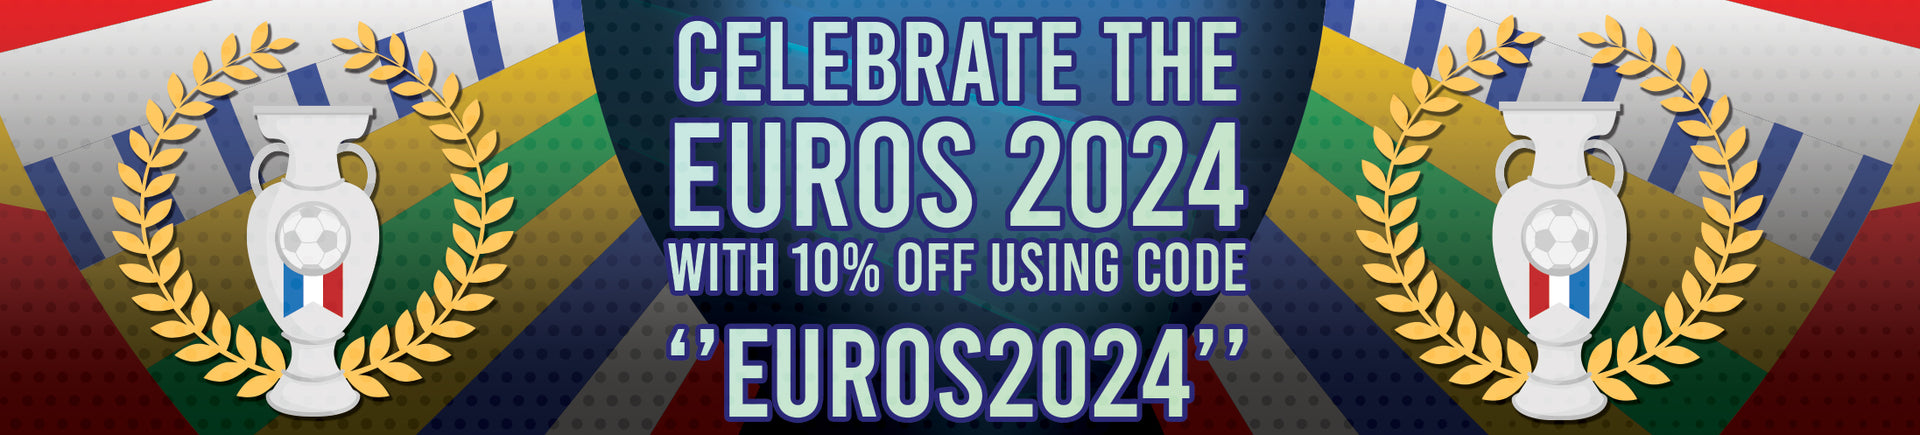 Euros 2024 Collection